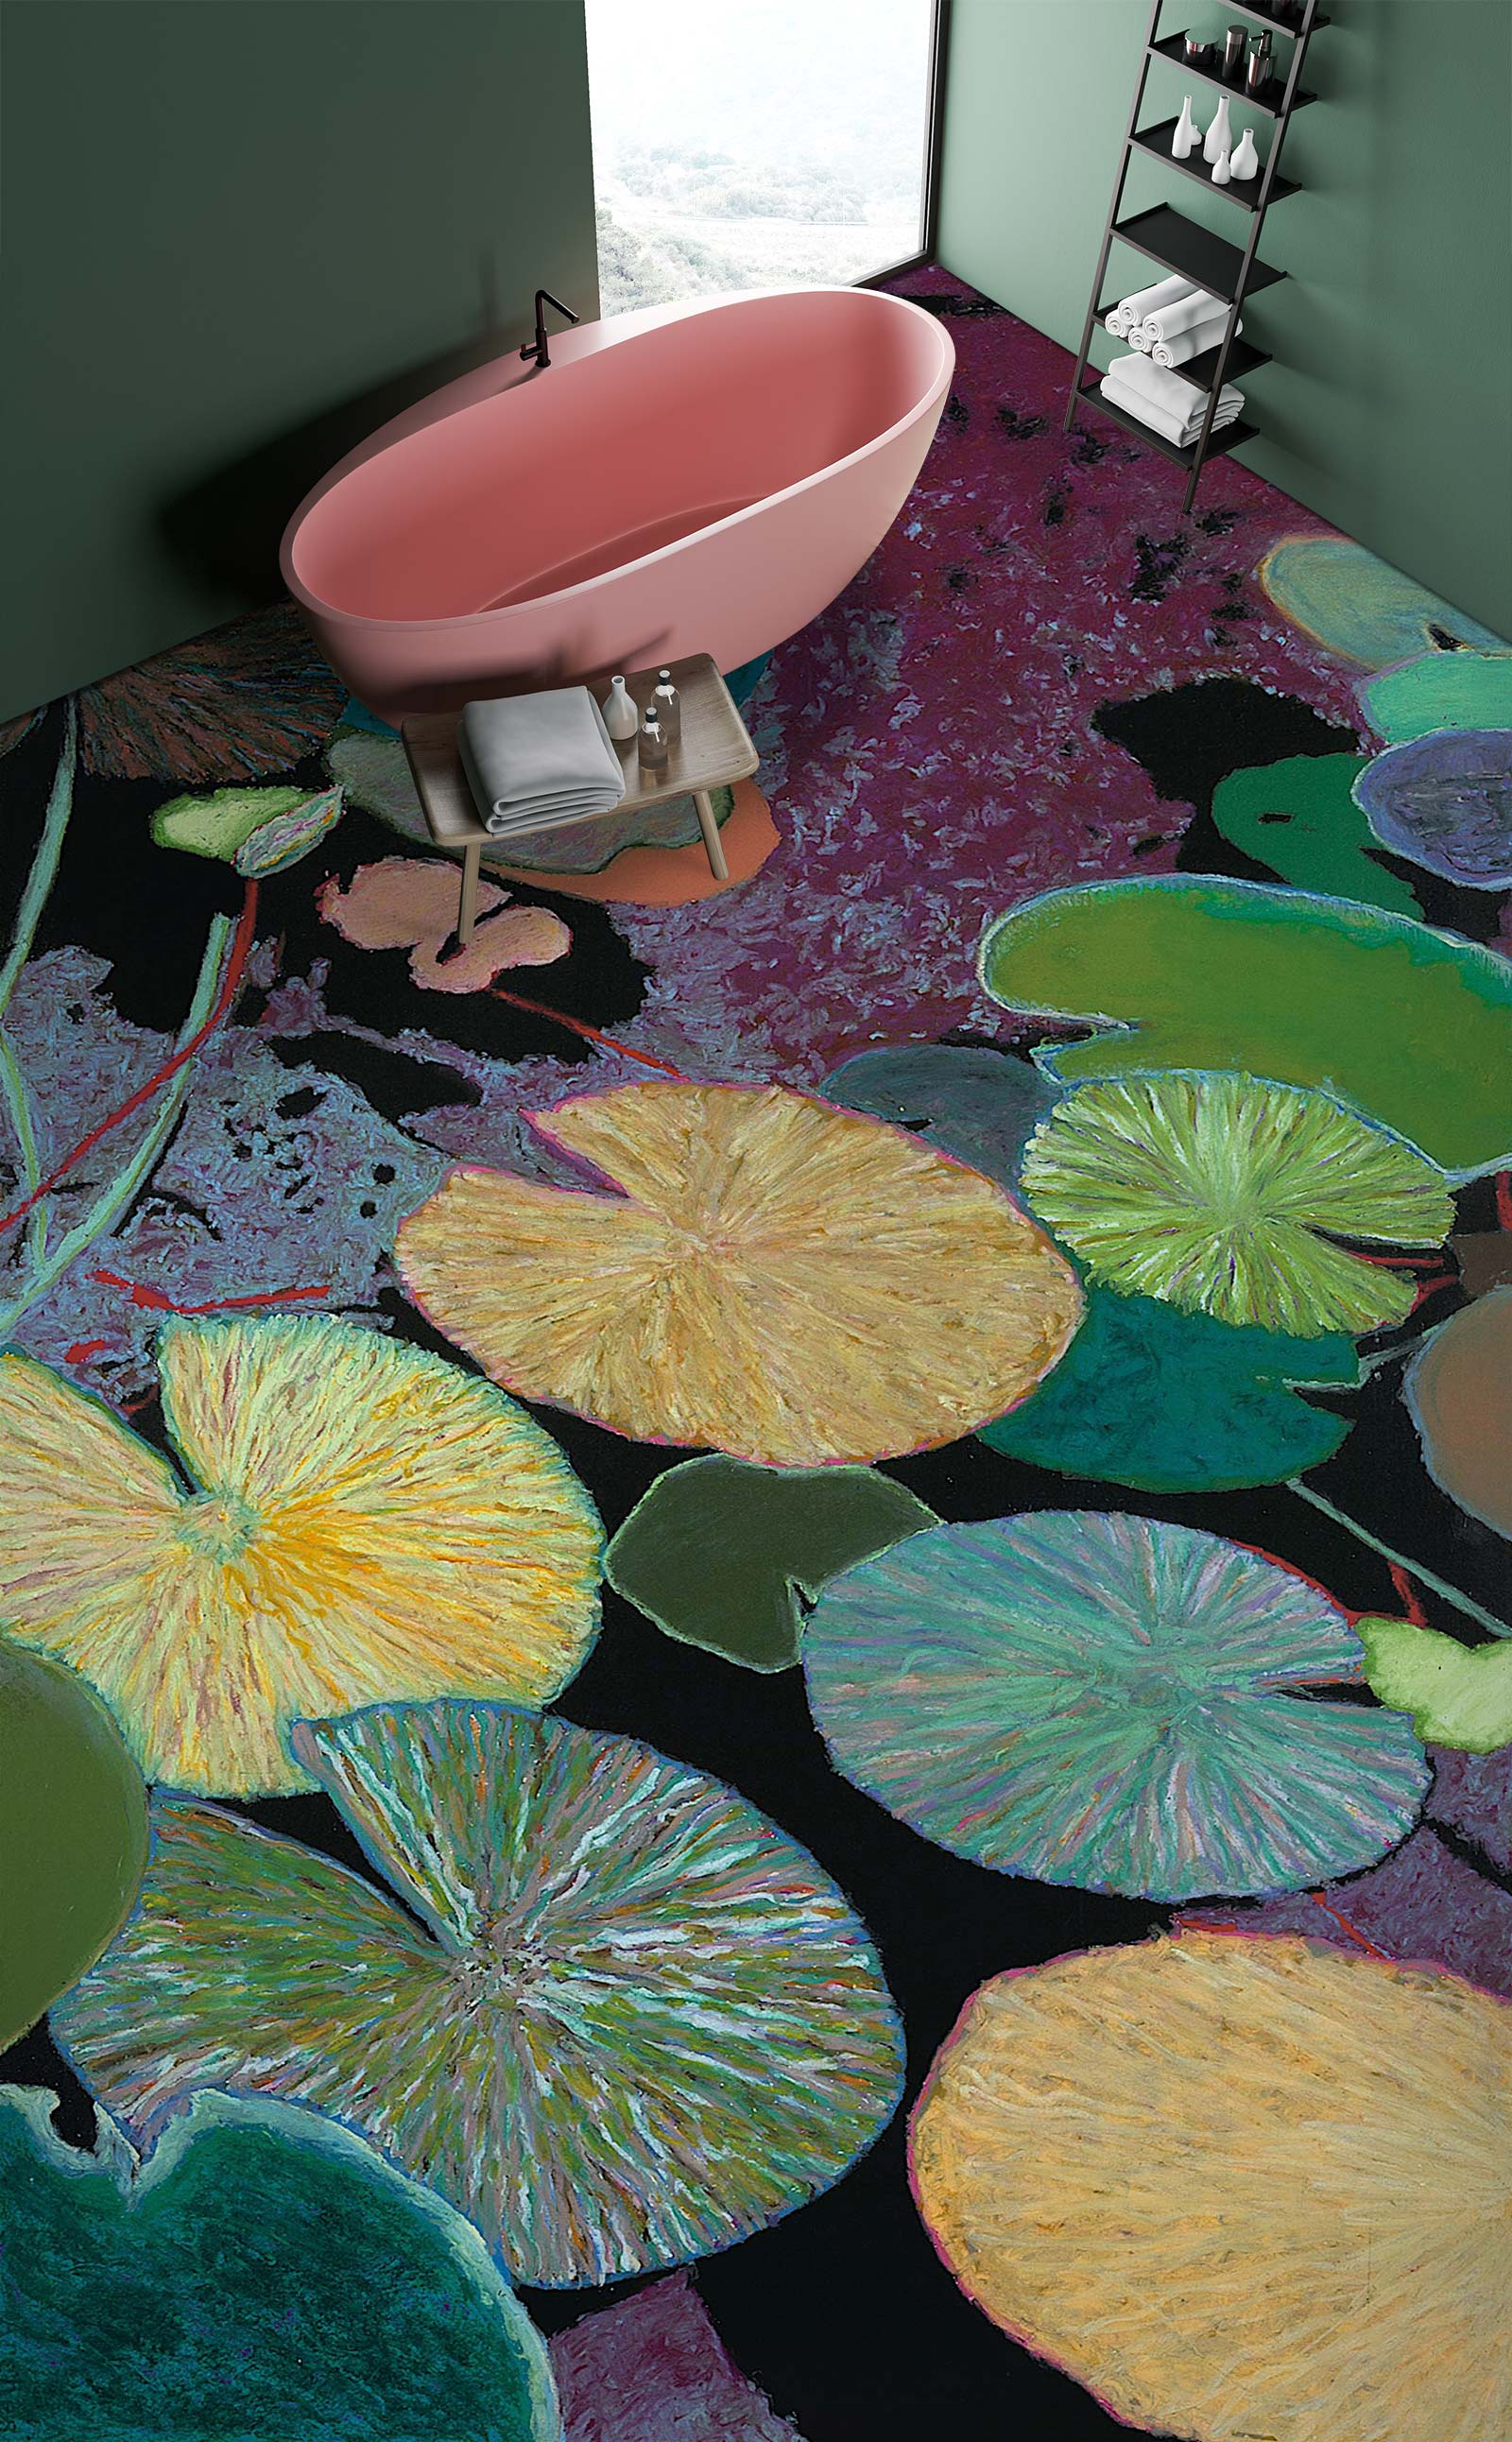 3D Lotus Leaf Pattern 96125 Allan P. Friedlander Floor Mural